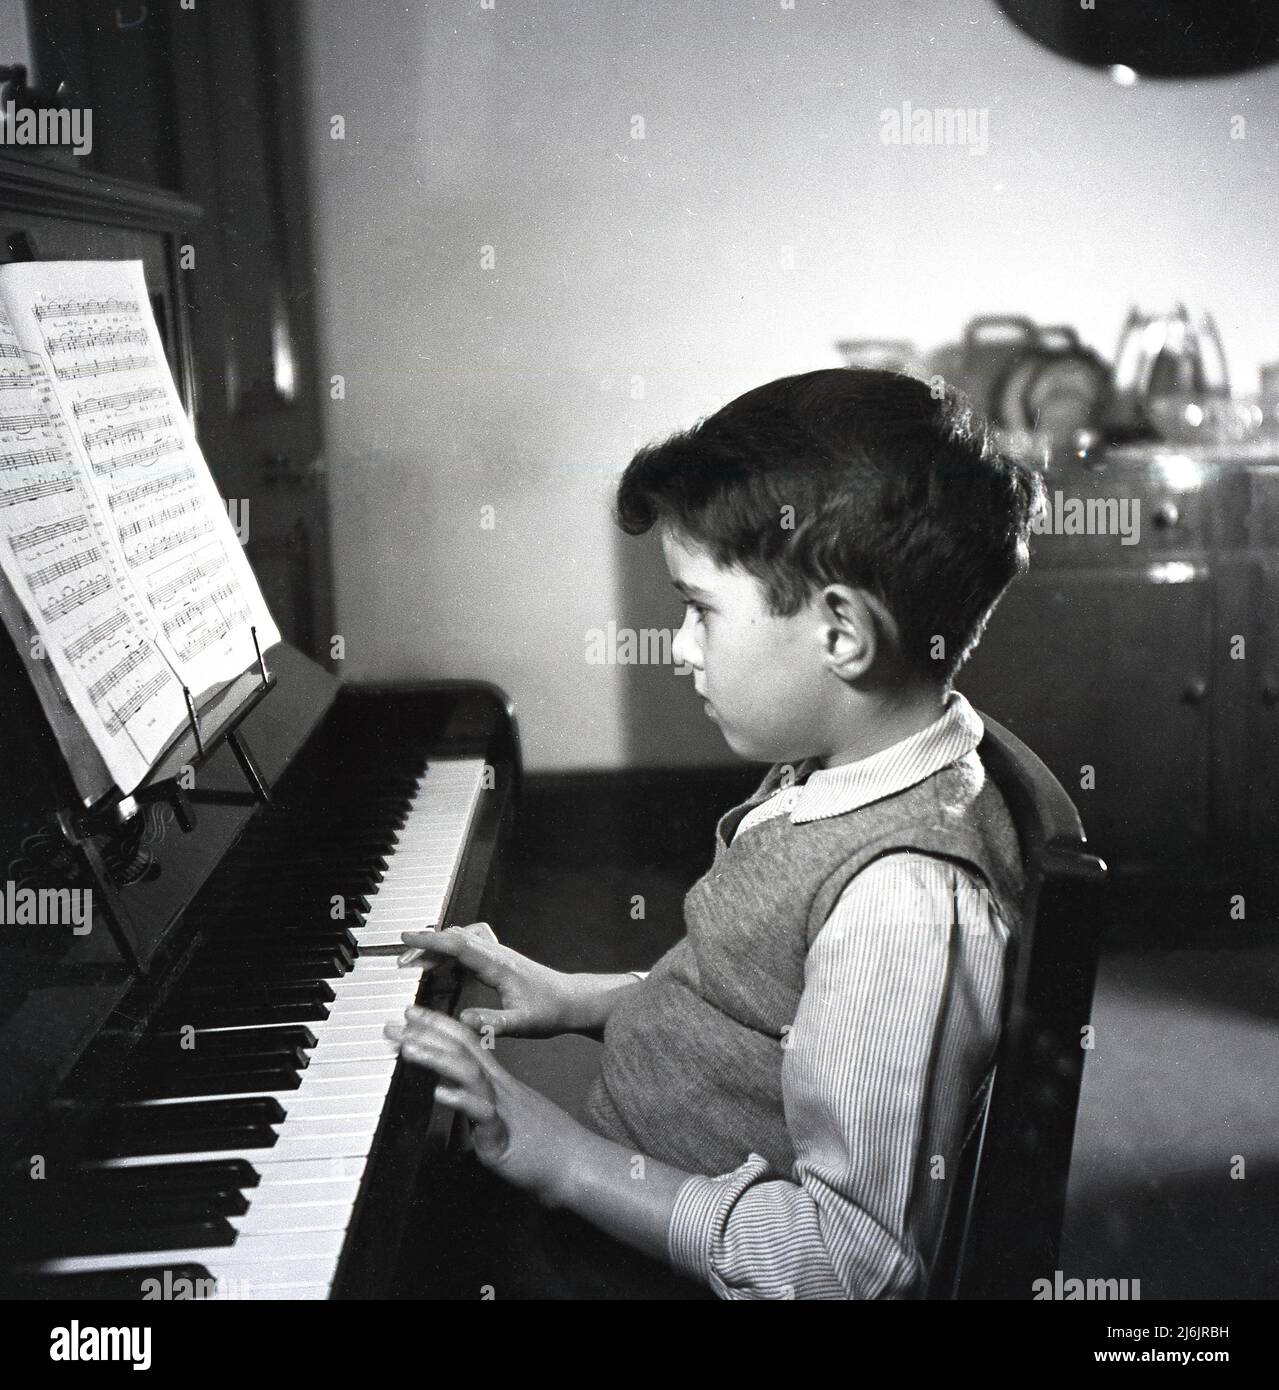 1953, historique, à l'intérieur d'une pièce à la maison, un jeune garçon  assis jouant un piano vertical traditionnel, avec de la musique de fond  au-dessus du clavier, Angleterre, Royaume-Uni Photo Stock -